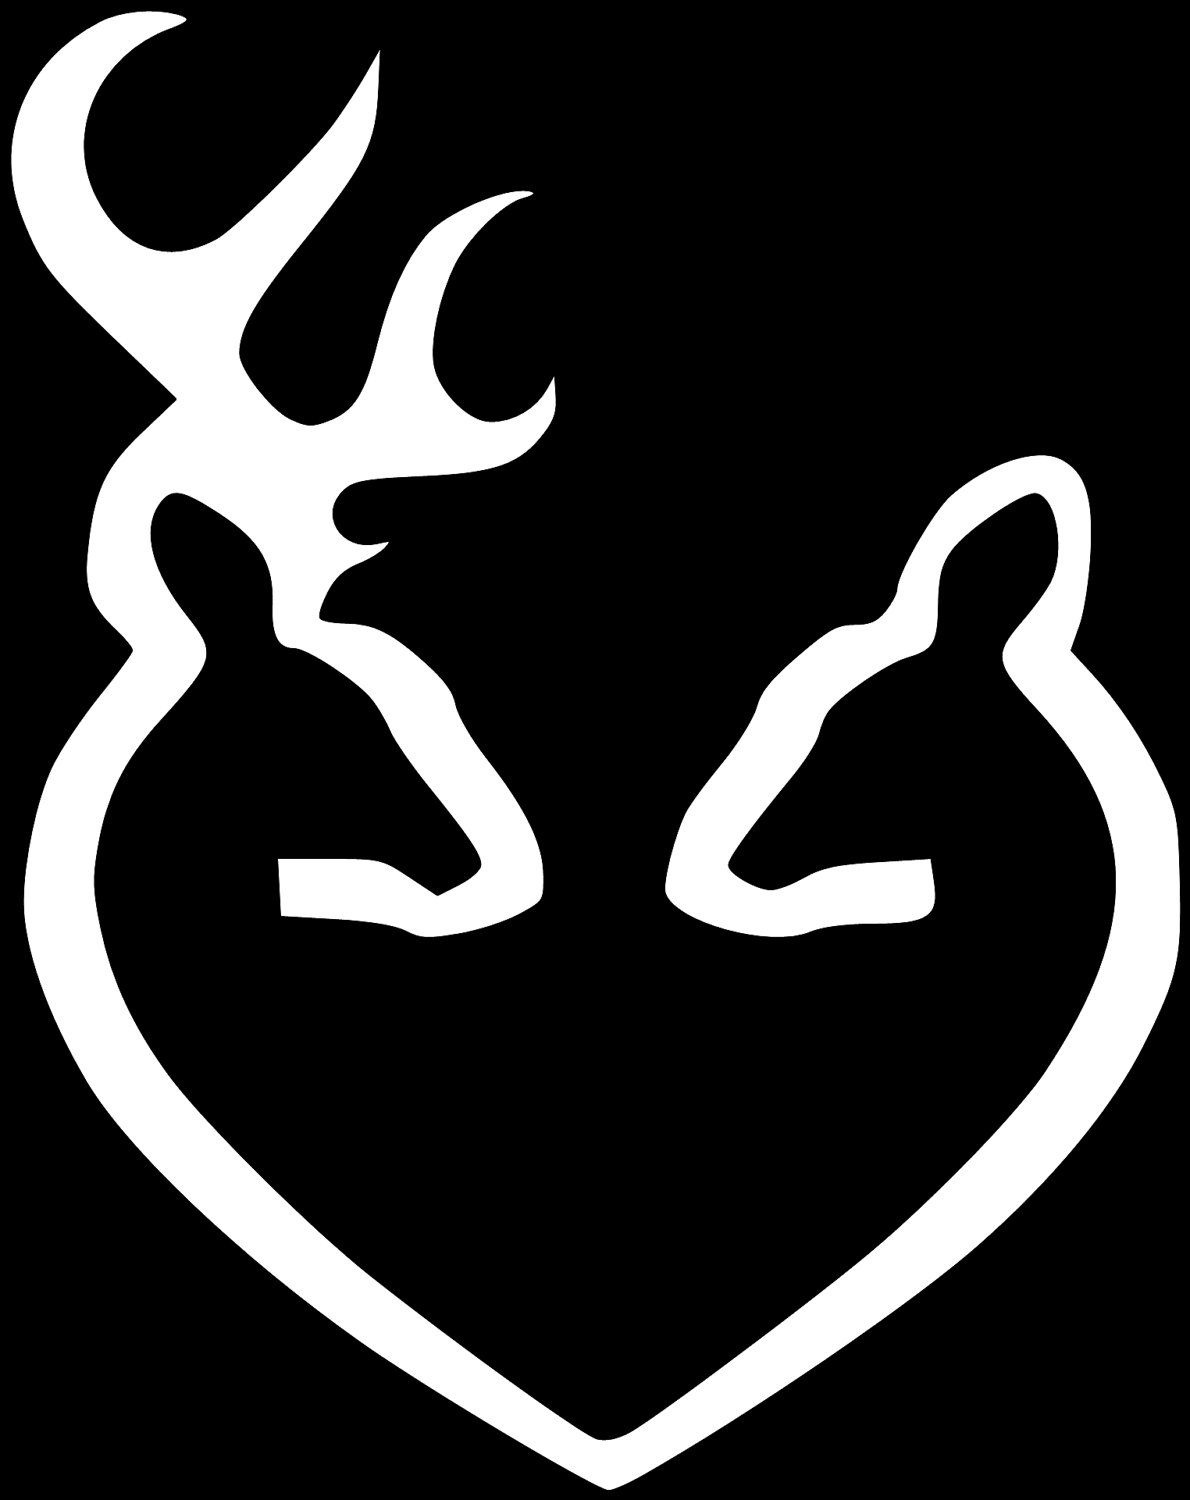 Kissing Deer Logo | Browning Logo Images | Wood Burning | Deer - Free Printable Deer Pumpkin Stencils